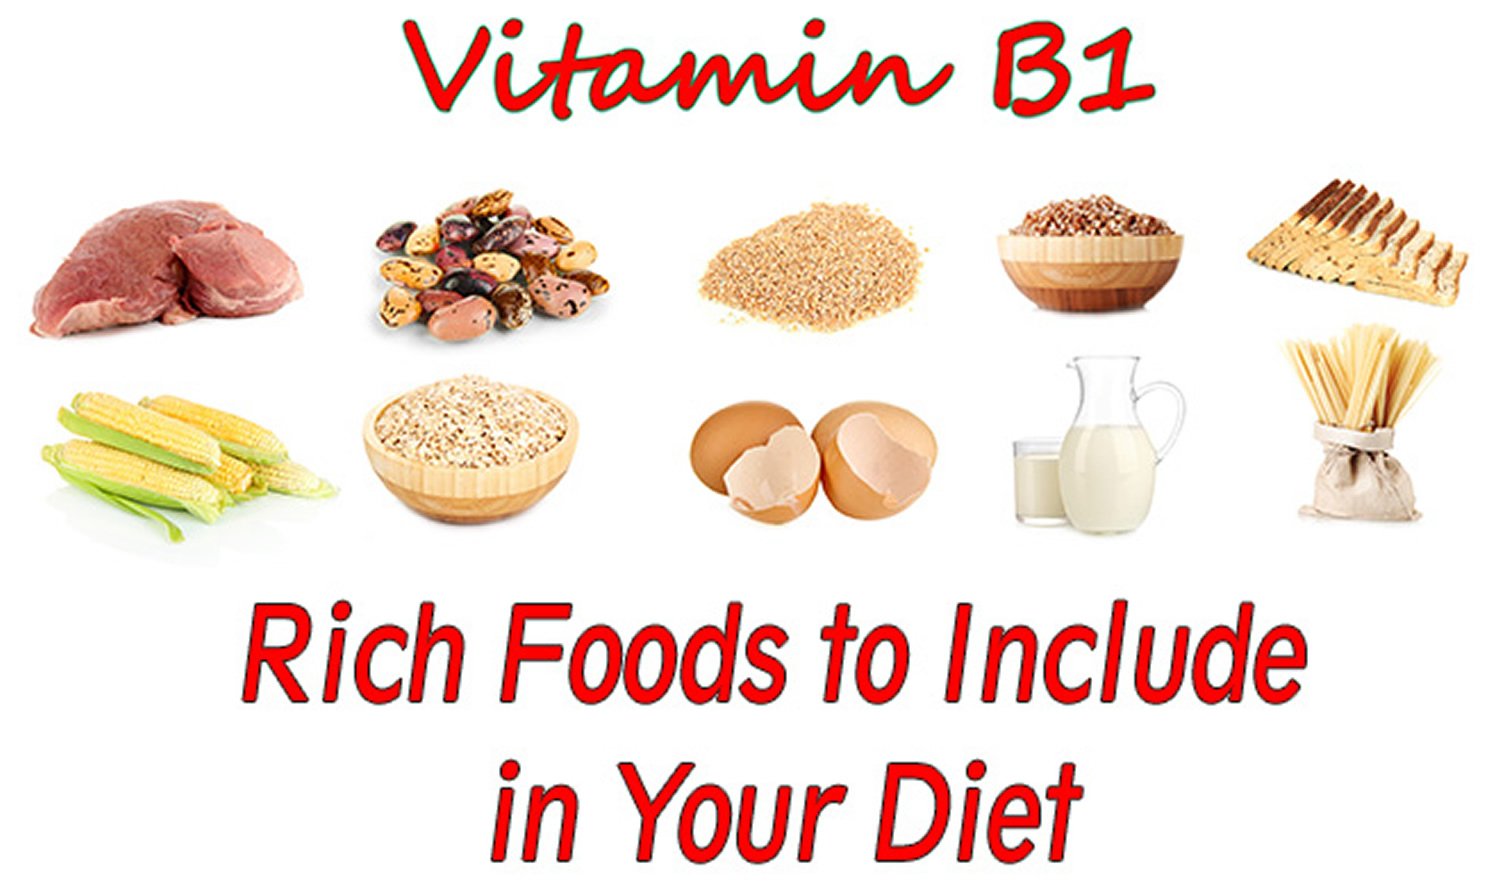 Vitamin-B1-Rich-Foods